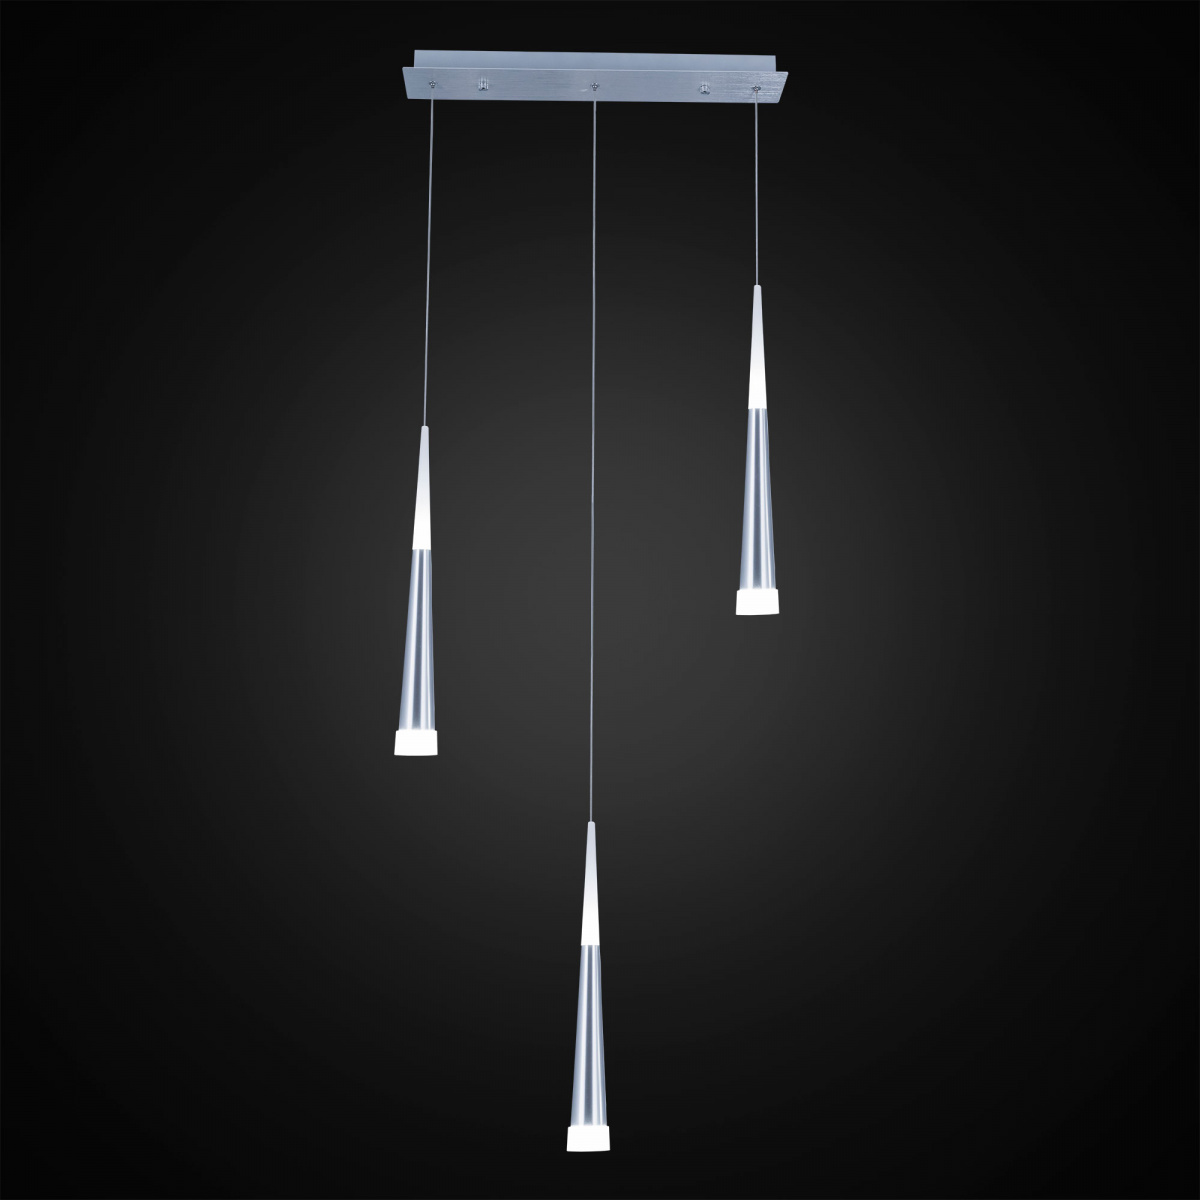 подвесной светильник citilux вегас (vegas), артикул CL227030